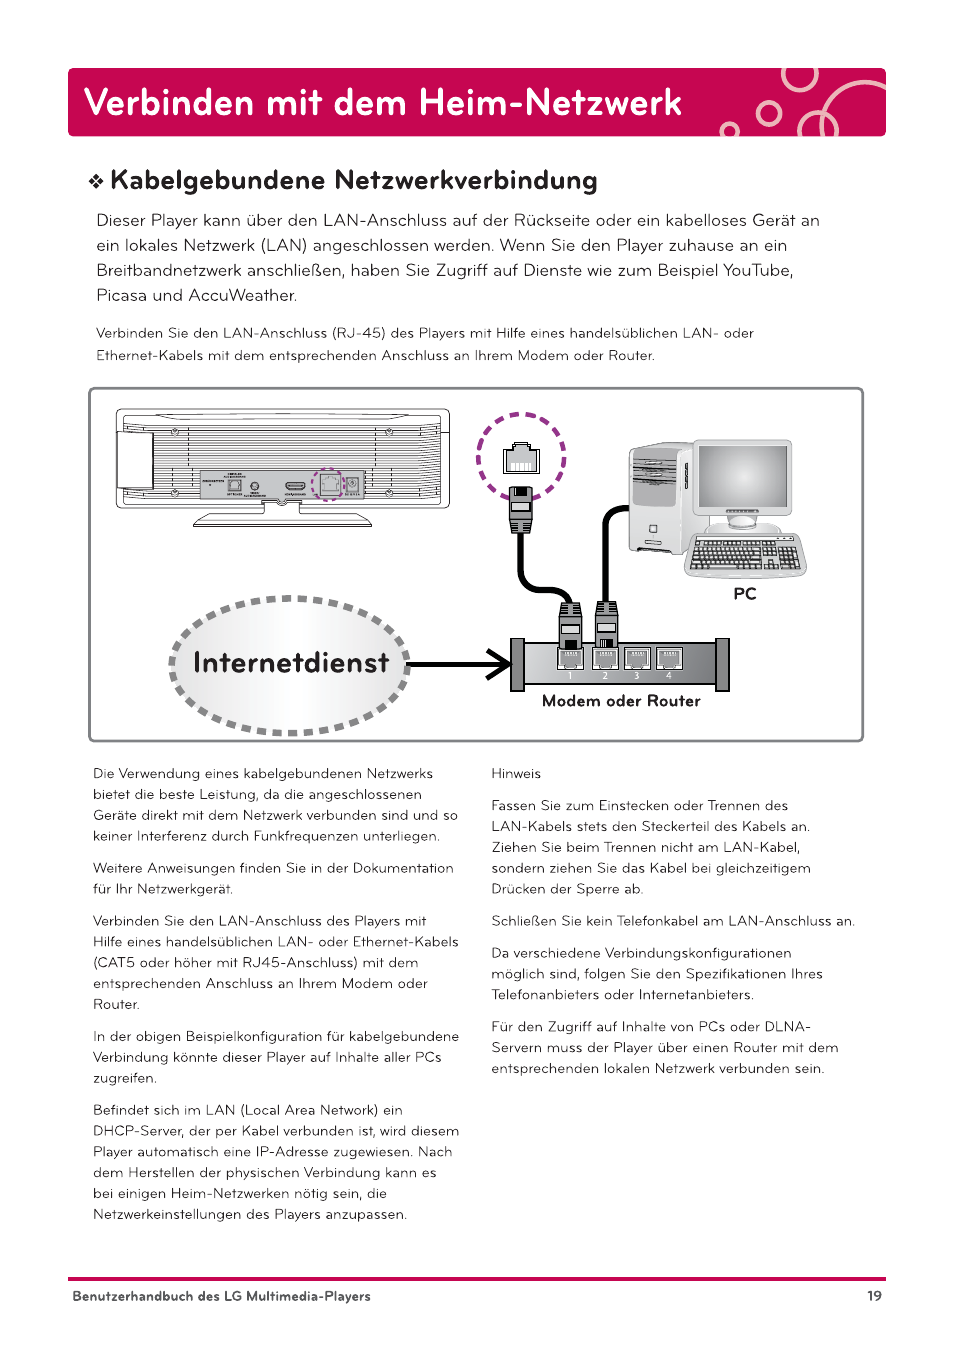 Kabelgebundene netzwerkverbindung, J internetdienst, Modem oder router | Verbinden mit dem heim-netzwerk | LG DP1BPBC Benutzerhandbuch | Seite 19 / 88